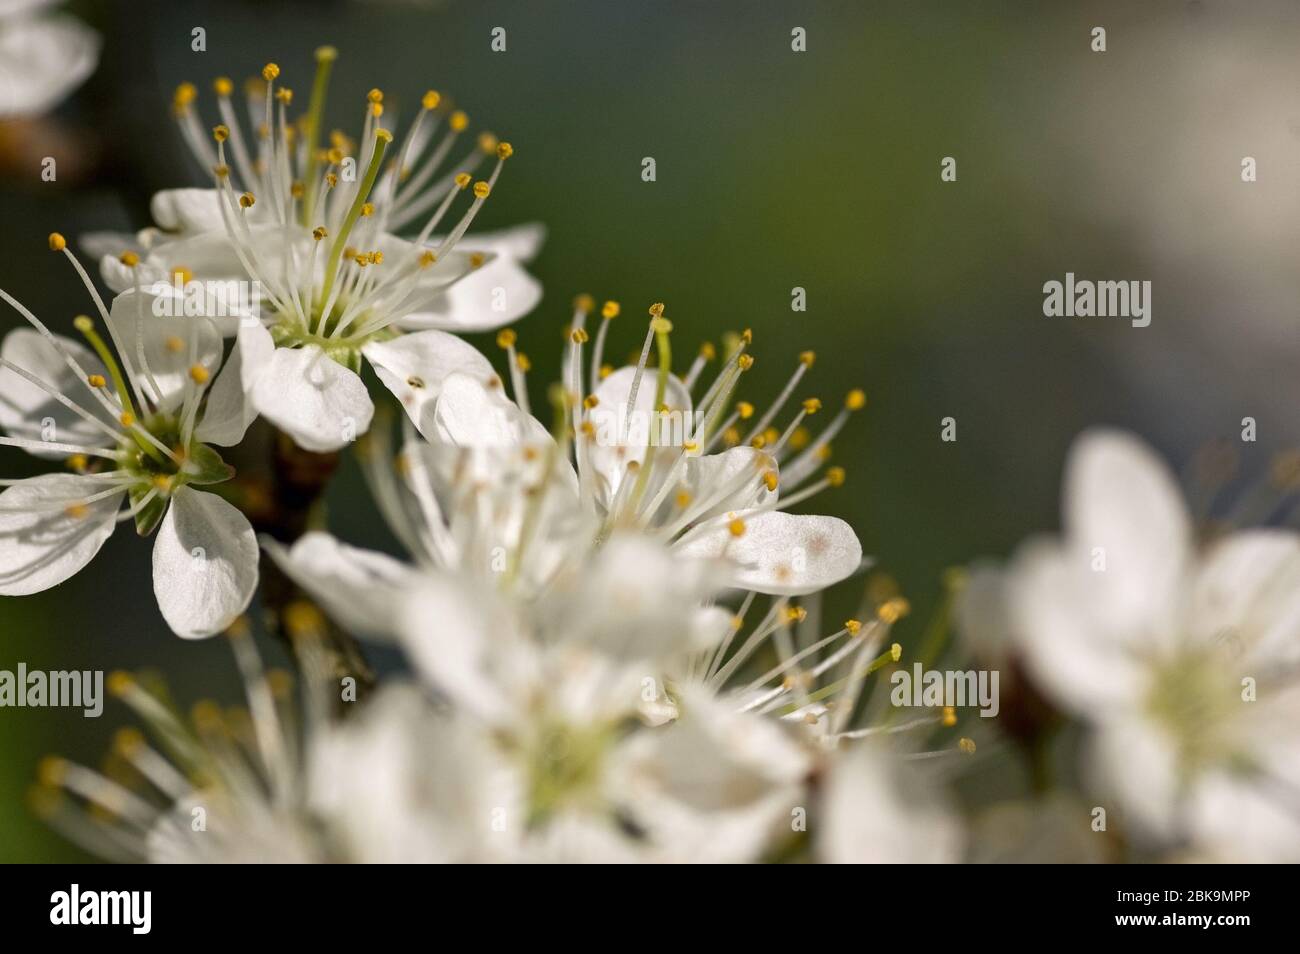 Blütenhaufen auf einem Weißdornbusch, lateinischer Name Crataegus monogyna, blühend im Frühling. Stockfoto